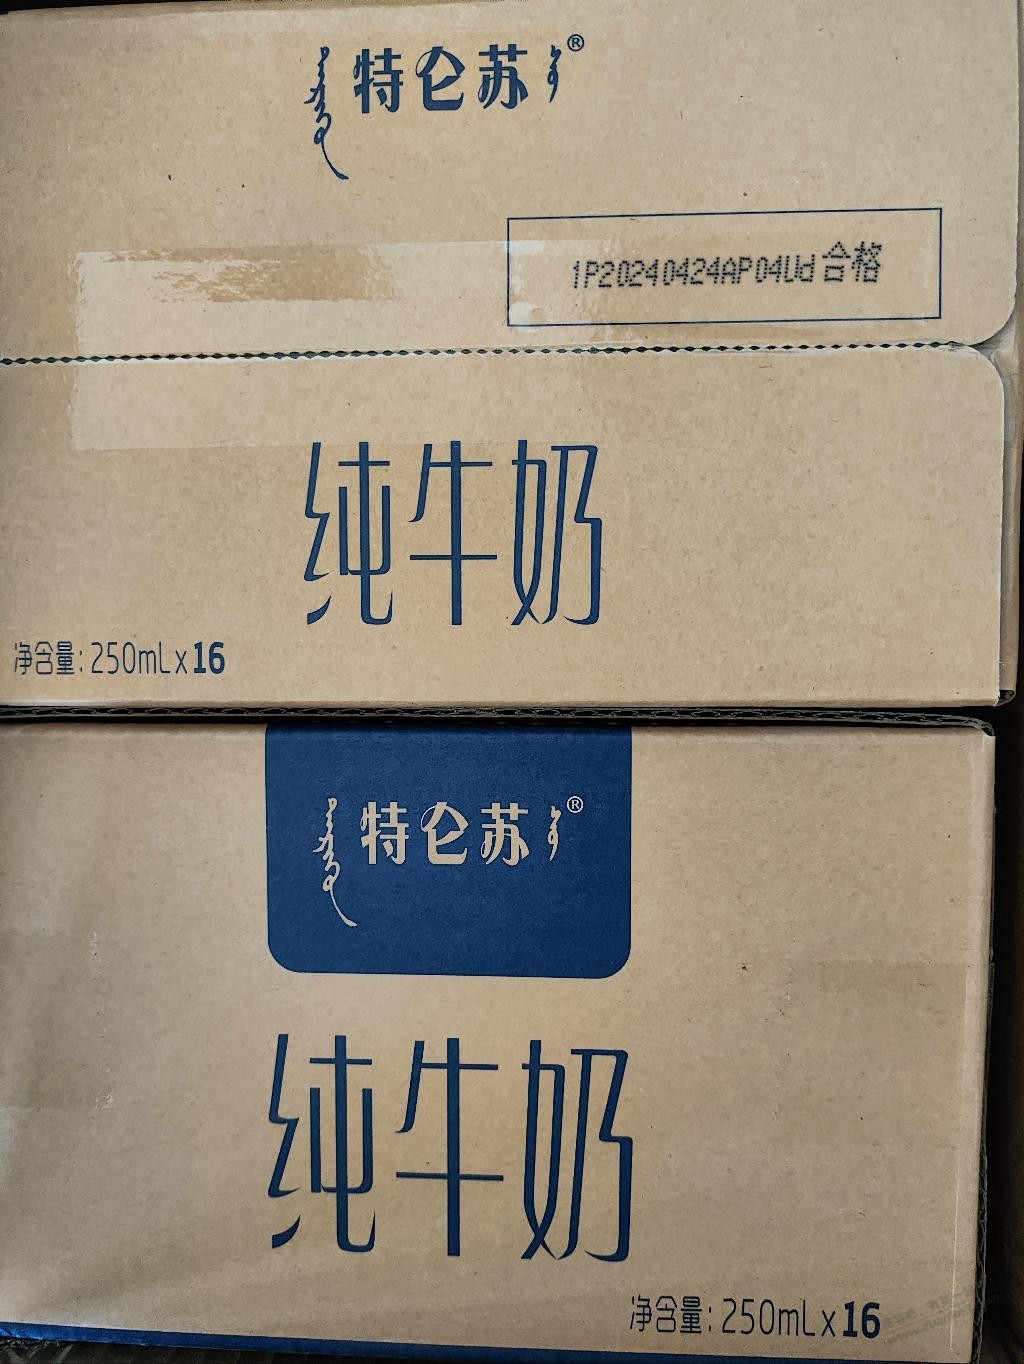 京东26元一箱的特仑苏生产日期竟然是4月24号的